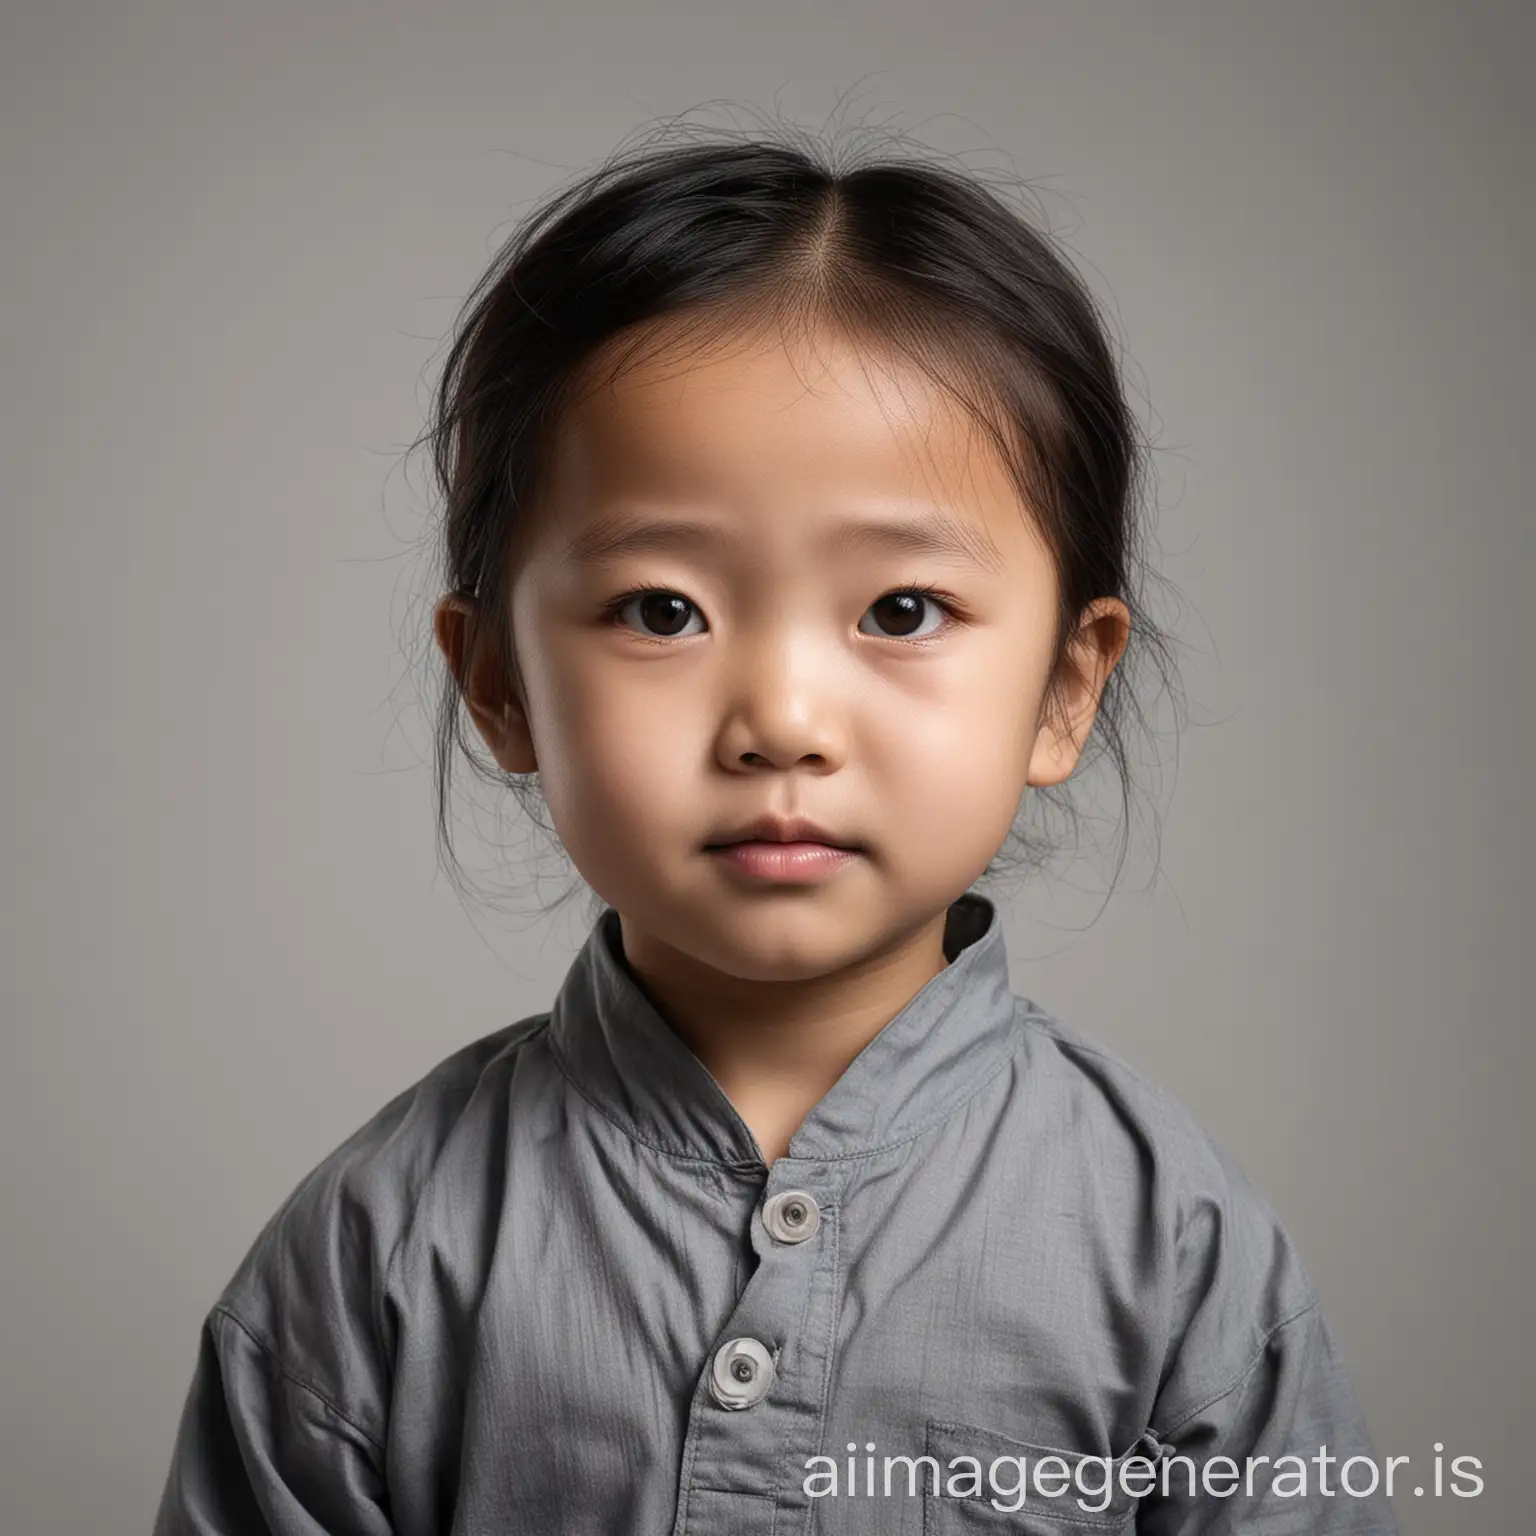 单人 亚洲儿童 深色衣服 纯白色背景 证件照 脸部亮度均匀